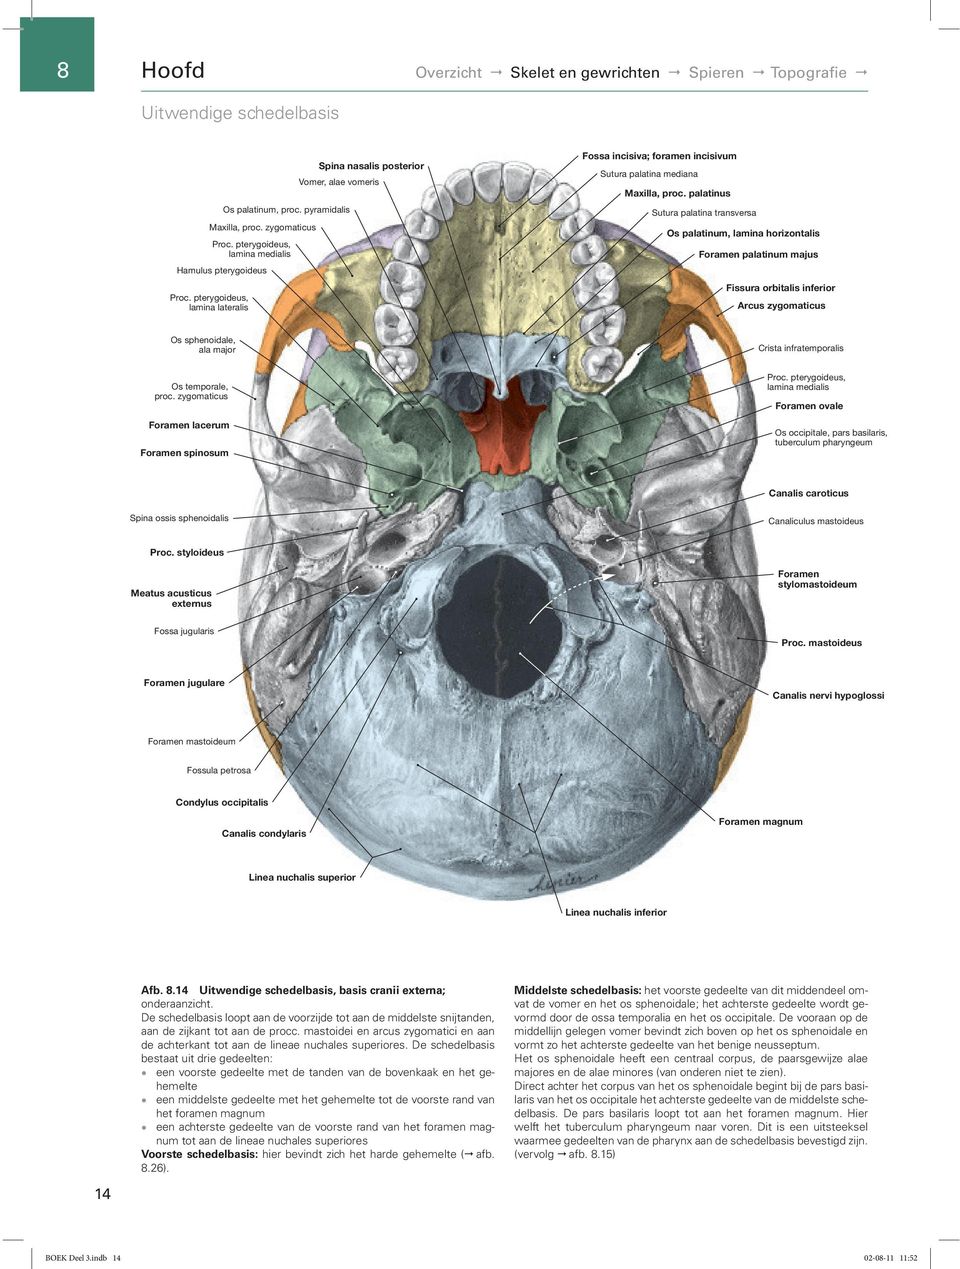 pterygoideus, Lamina lamina lateralis Fossa incisiva; Foramen foramen incisivum Sutura palatina mediana Maxilla, proc. Proc.